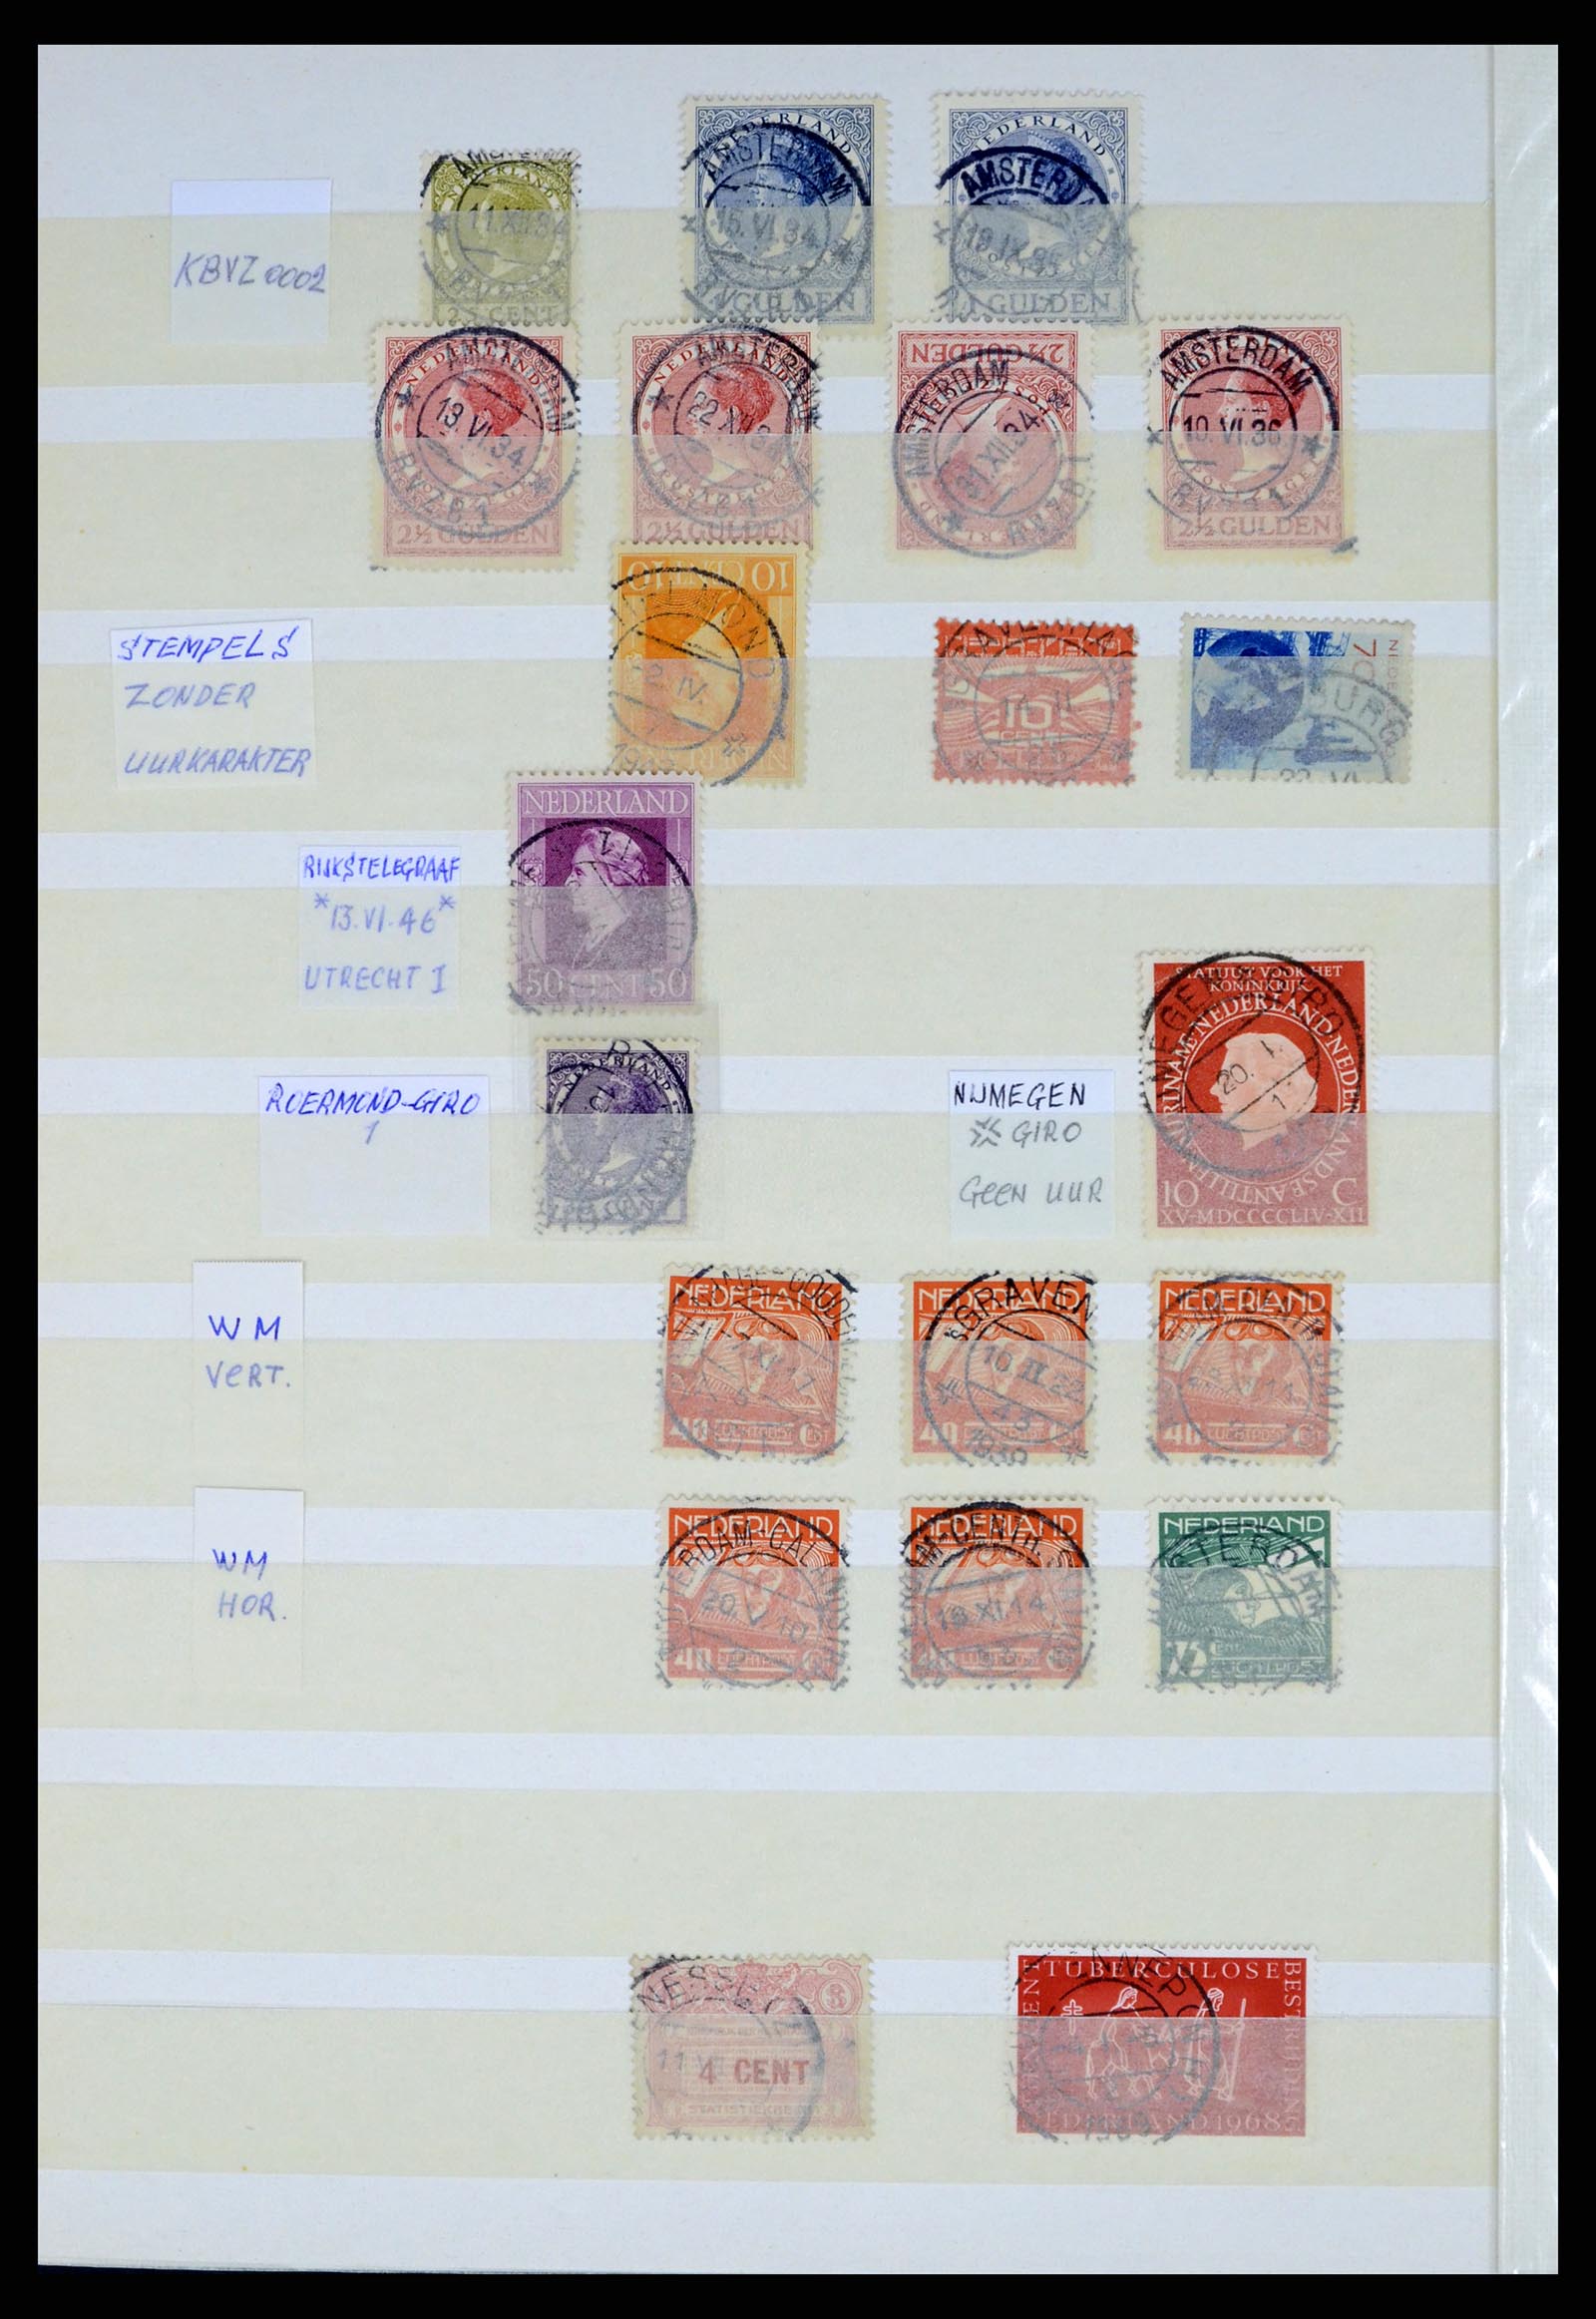 37424 062 - Postzegelverzameling 37424 Nederland kortebalk stempels.